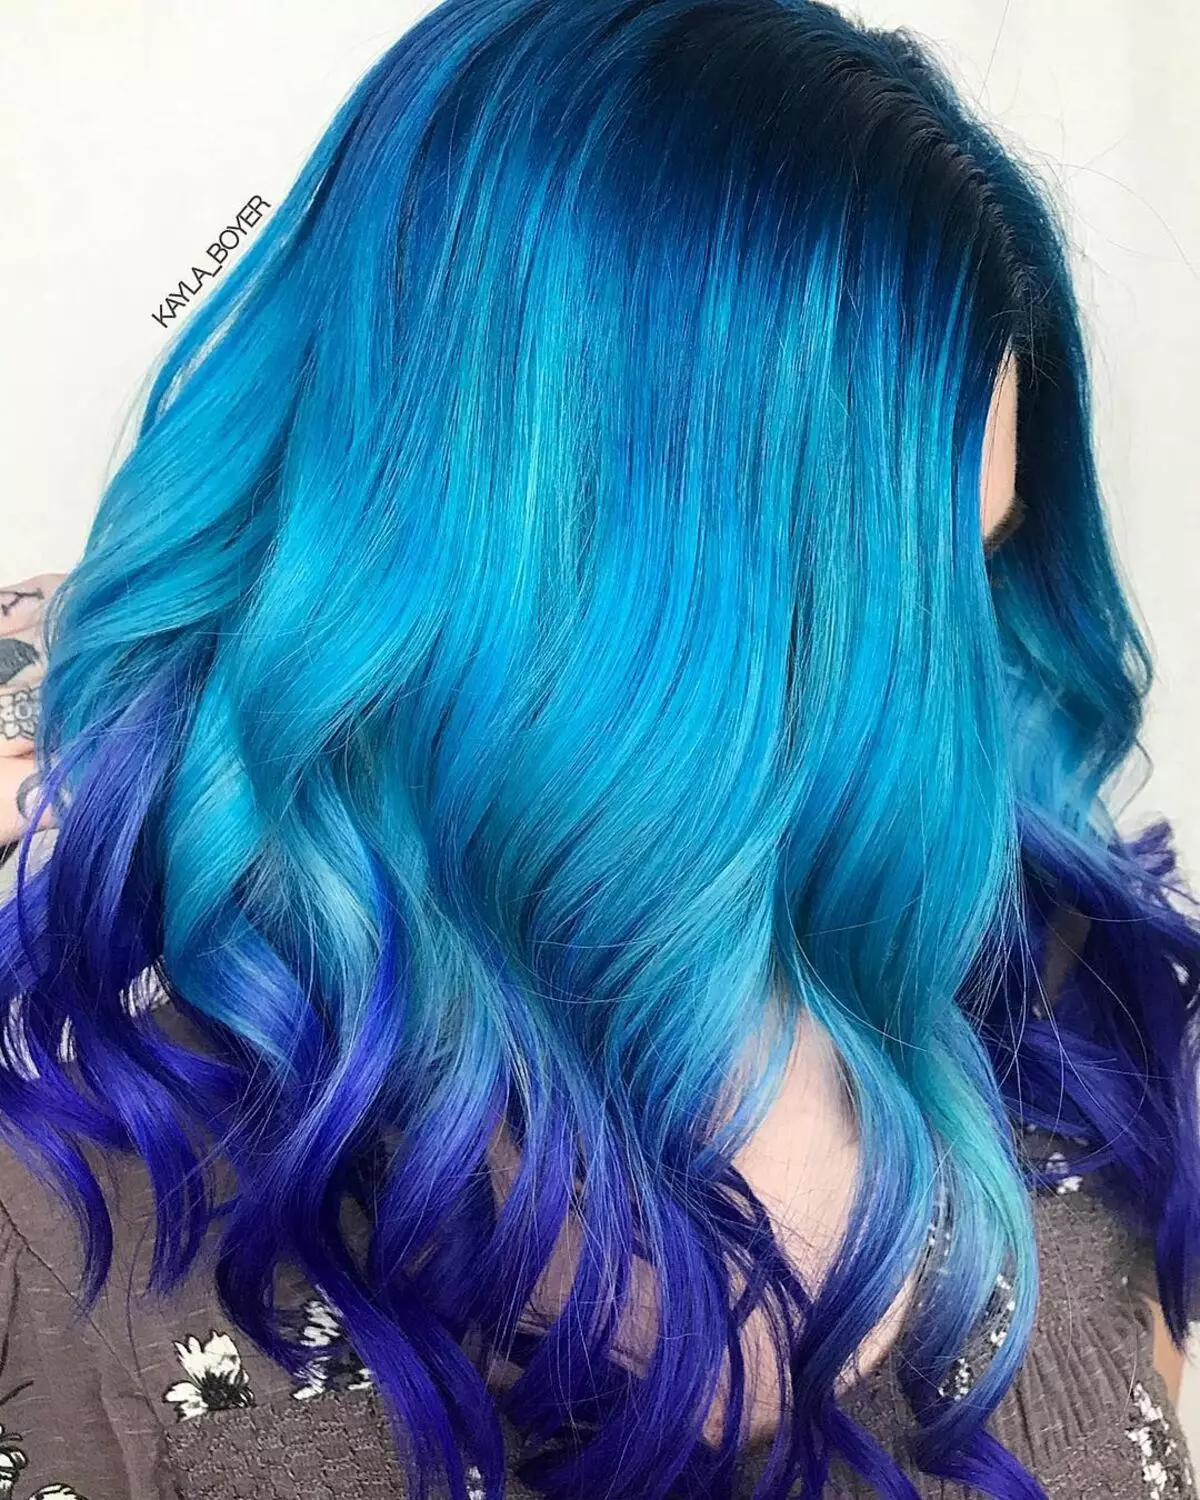 Vernice dei capelli blu: Panoramica delle pitture dei capelli resistenti con il tumpino blu, dal blu chiaro alle sfumature nere e blu 5402_2